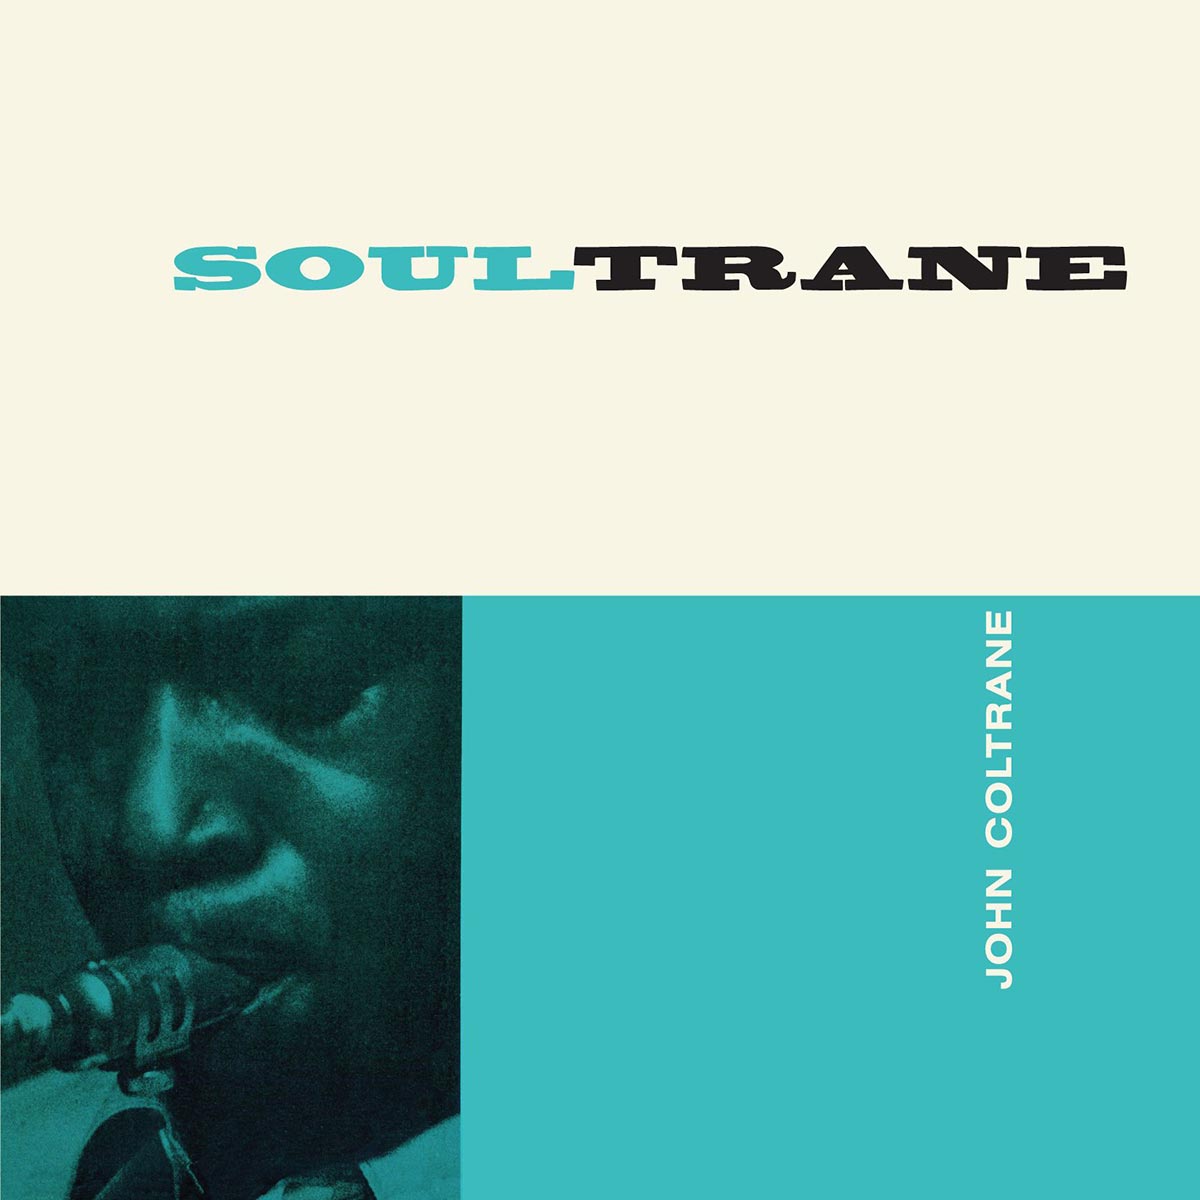 Soultrane - The Complete Album